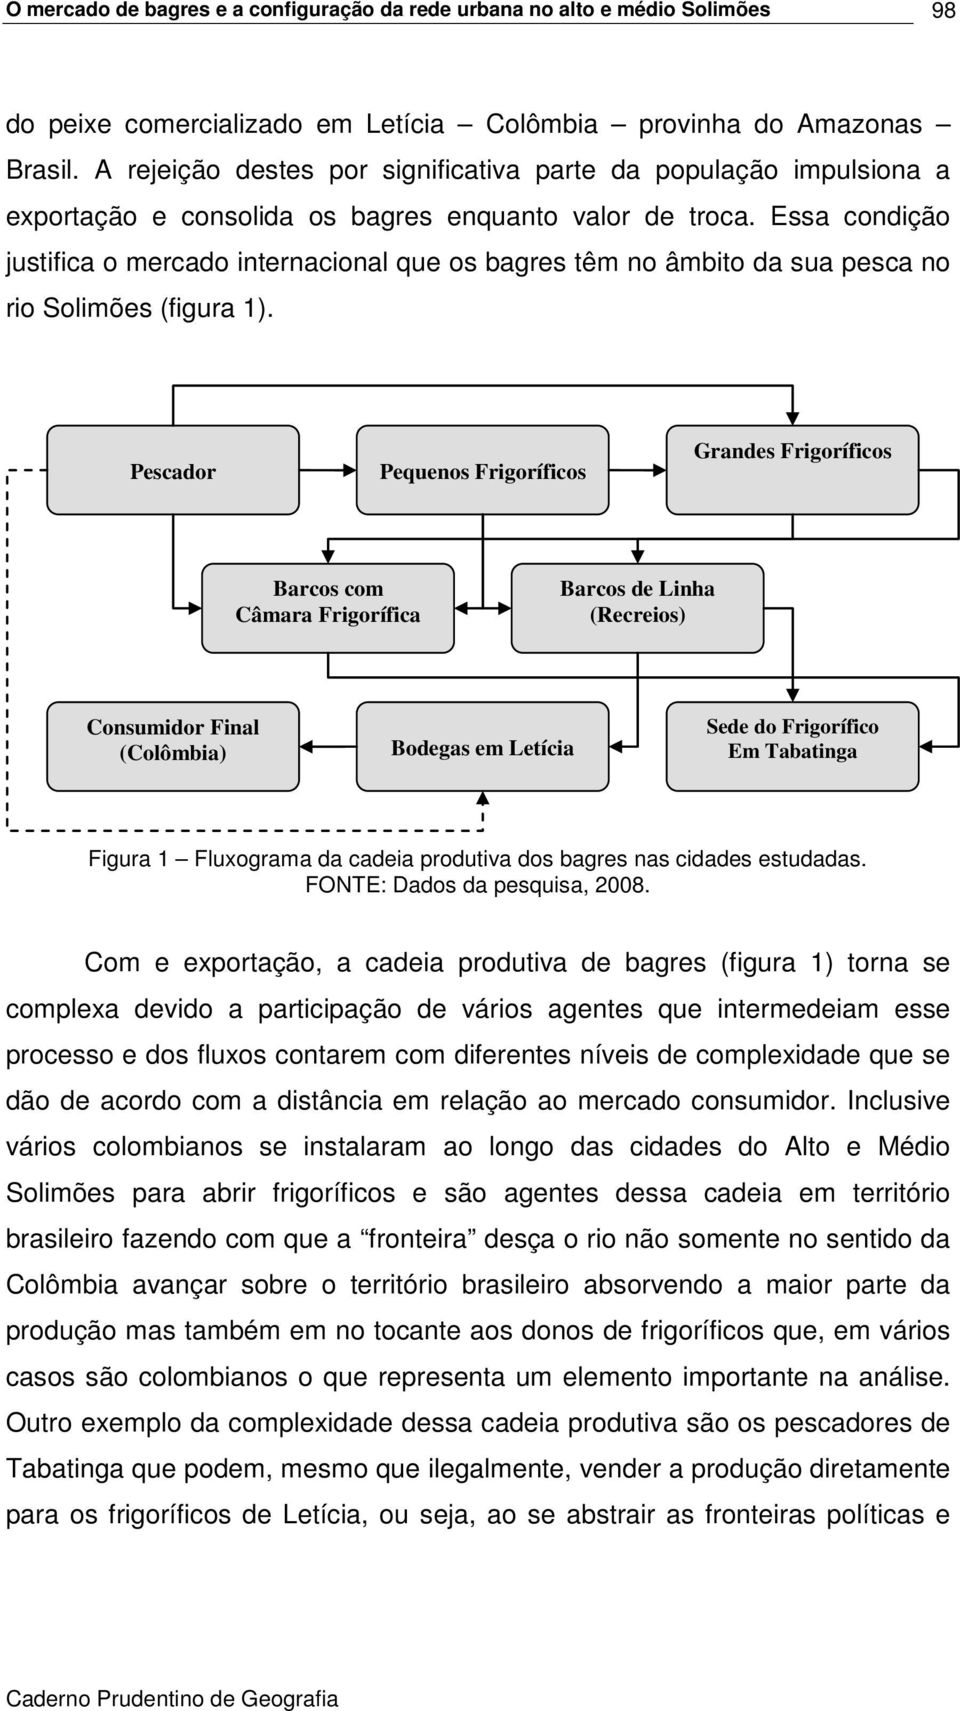 Essa condição justifica o mercado internacional que os bagres têm no âmbito da sua pesca no rio Solimões (figura 1).